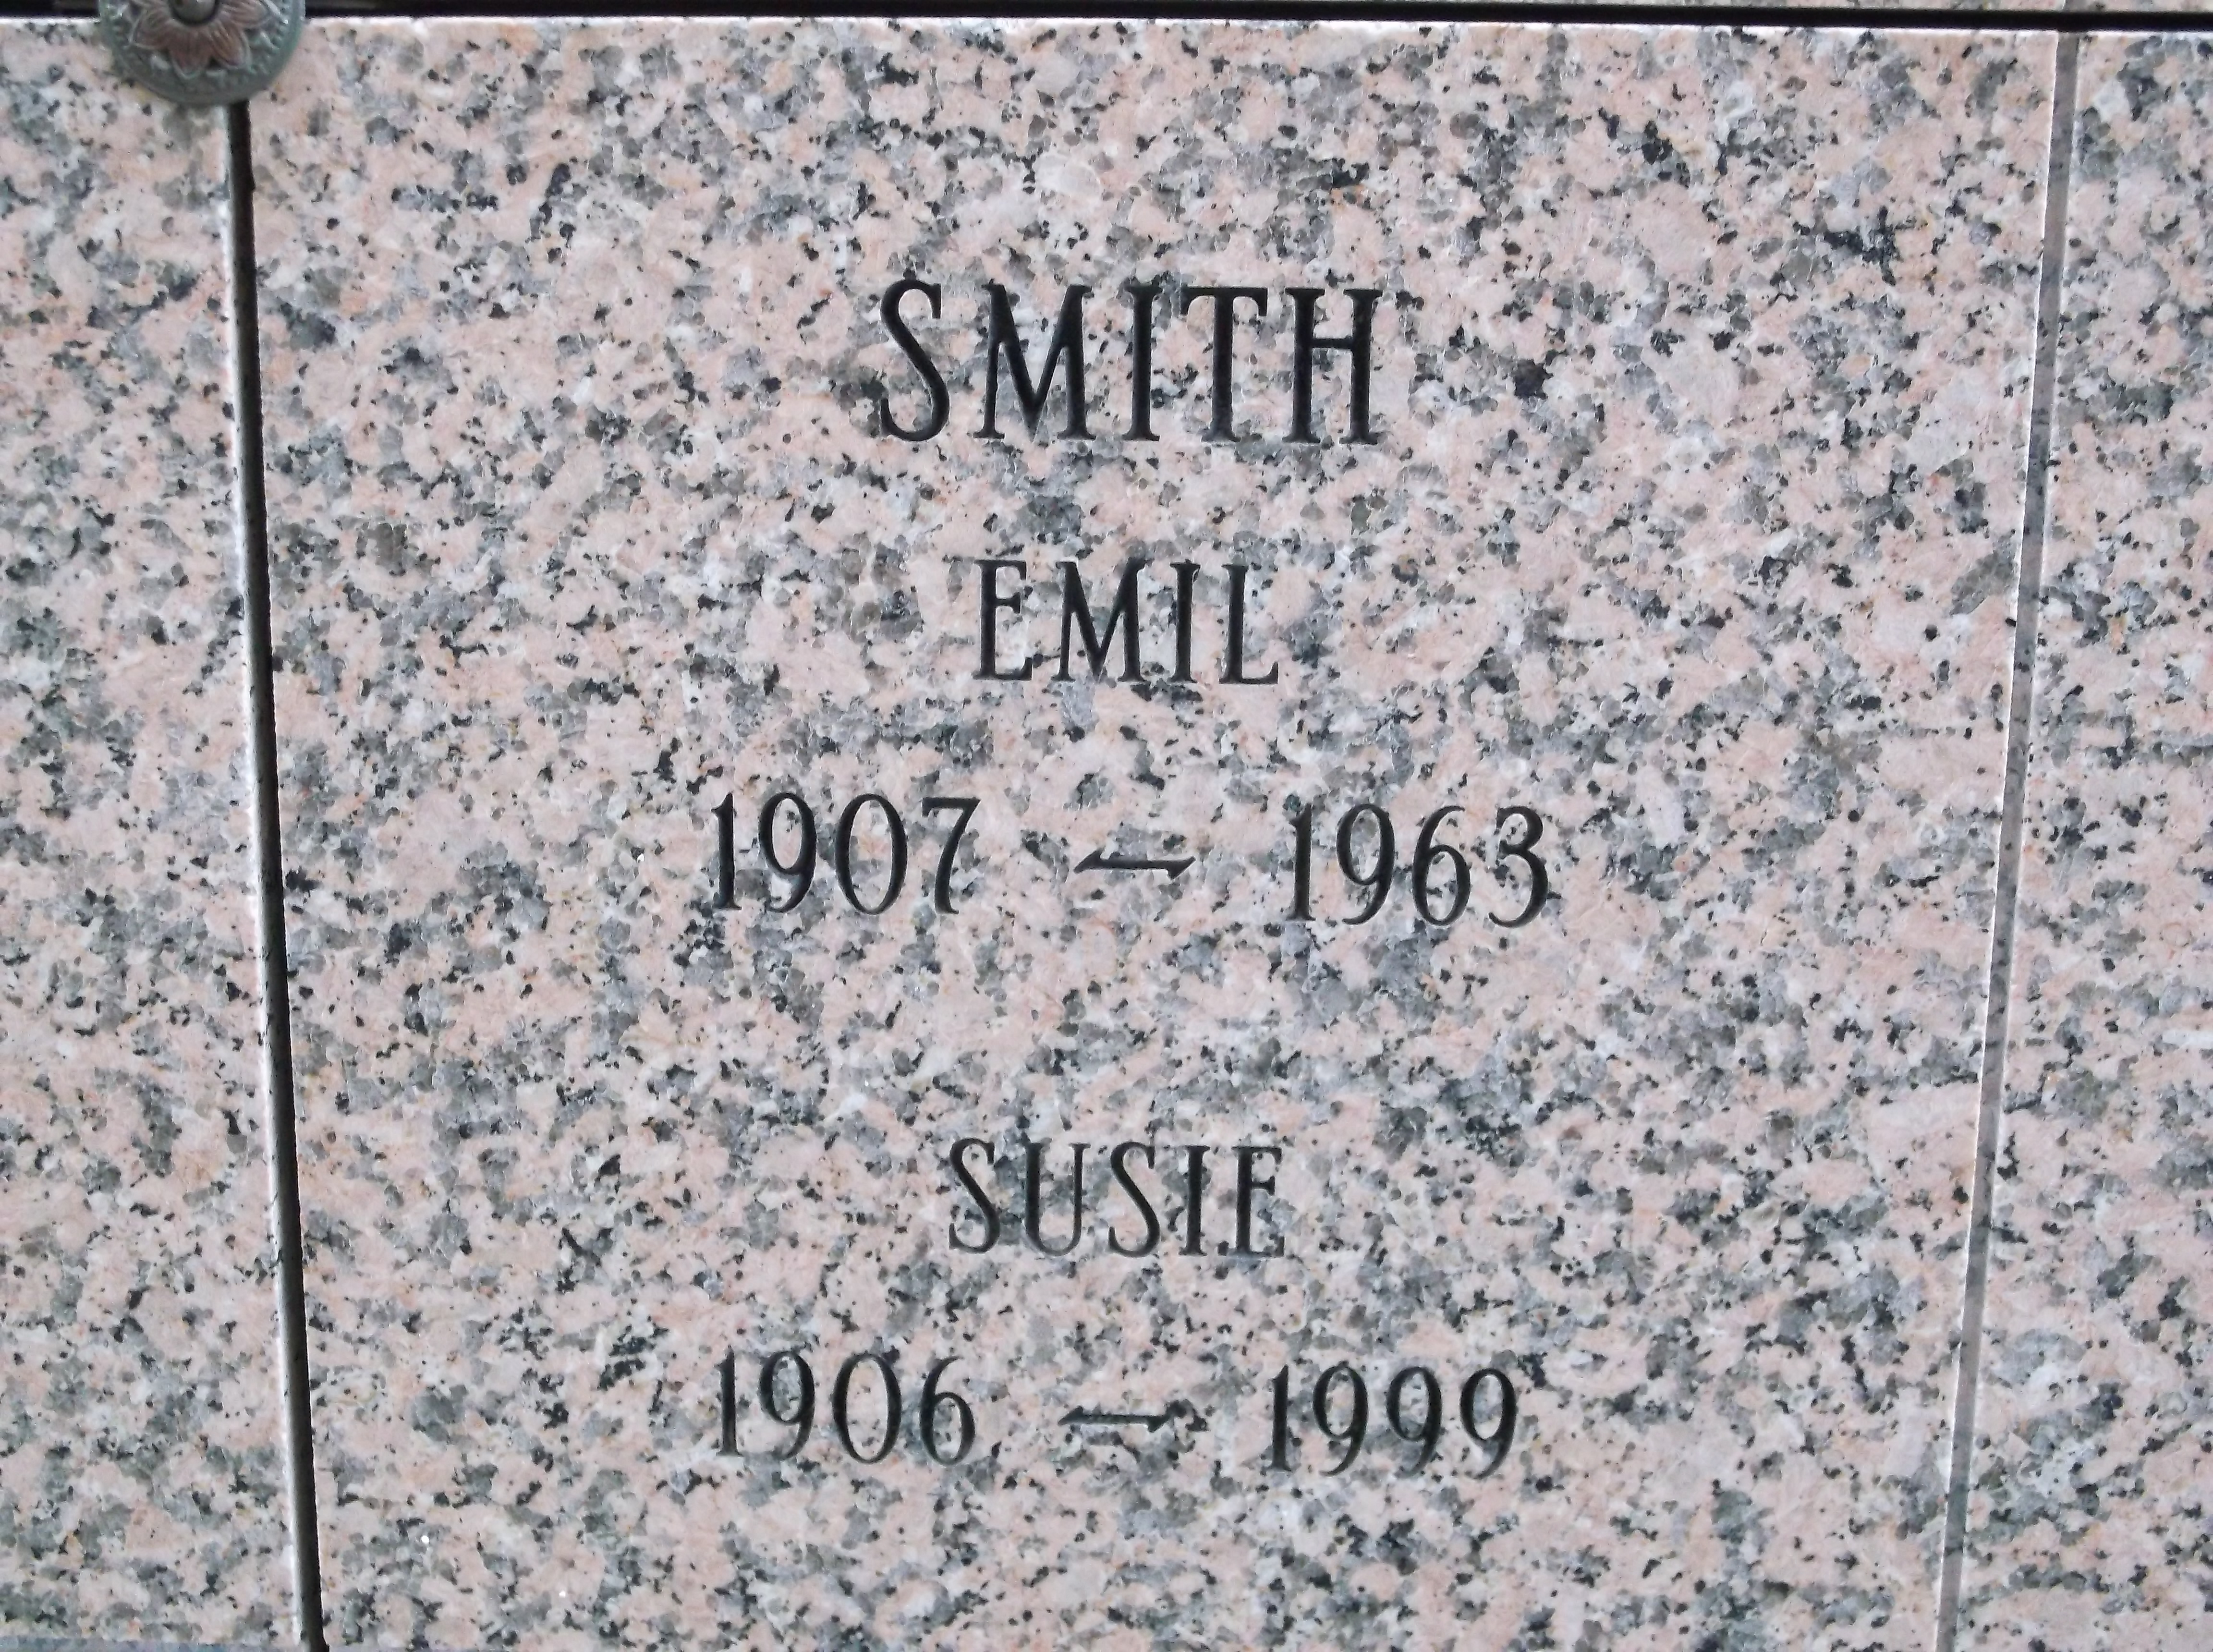 Emil Smith